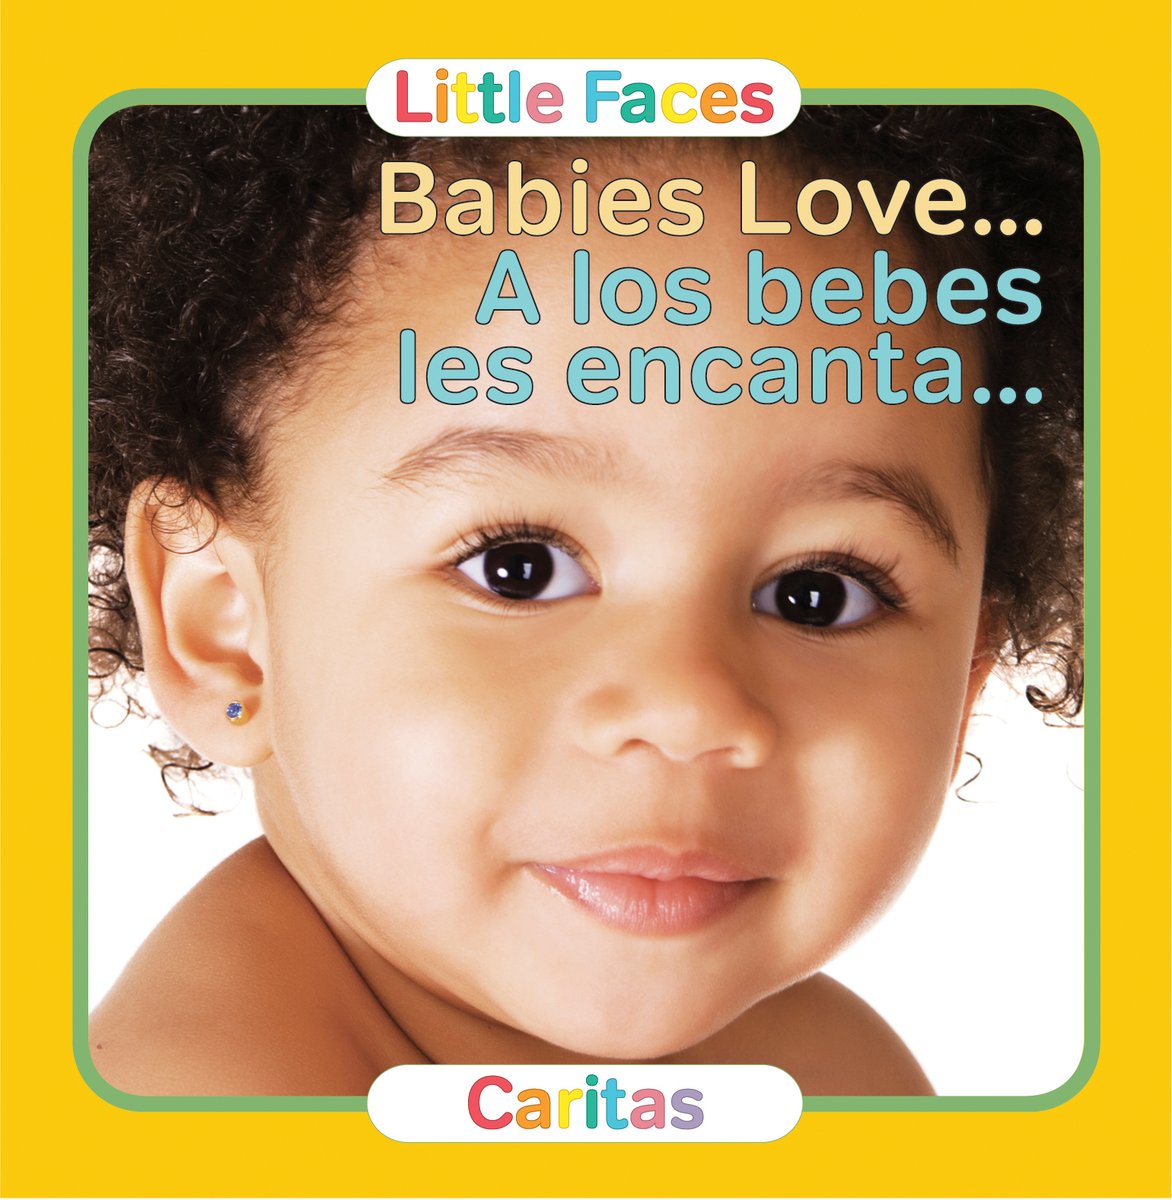 Little Faces - Babies Love Bilingual